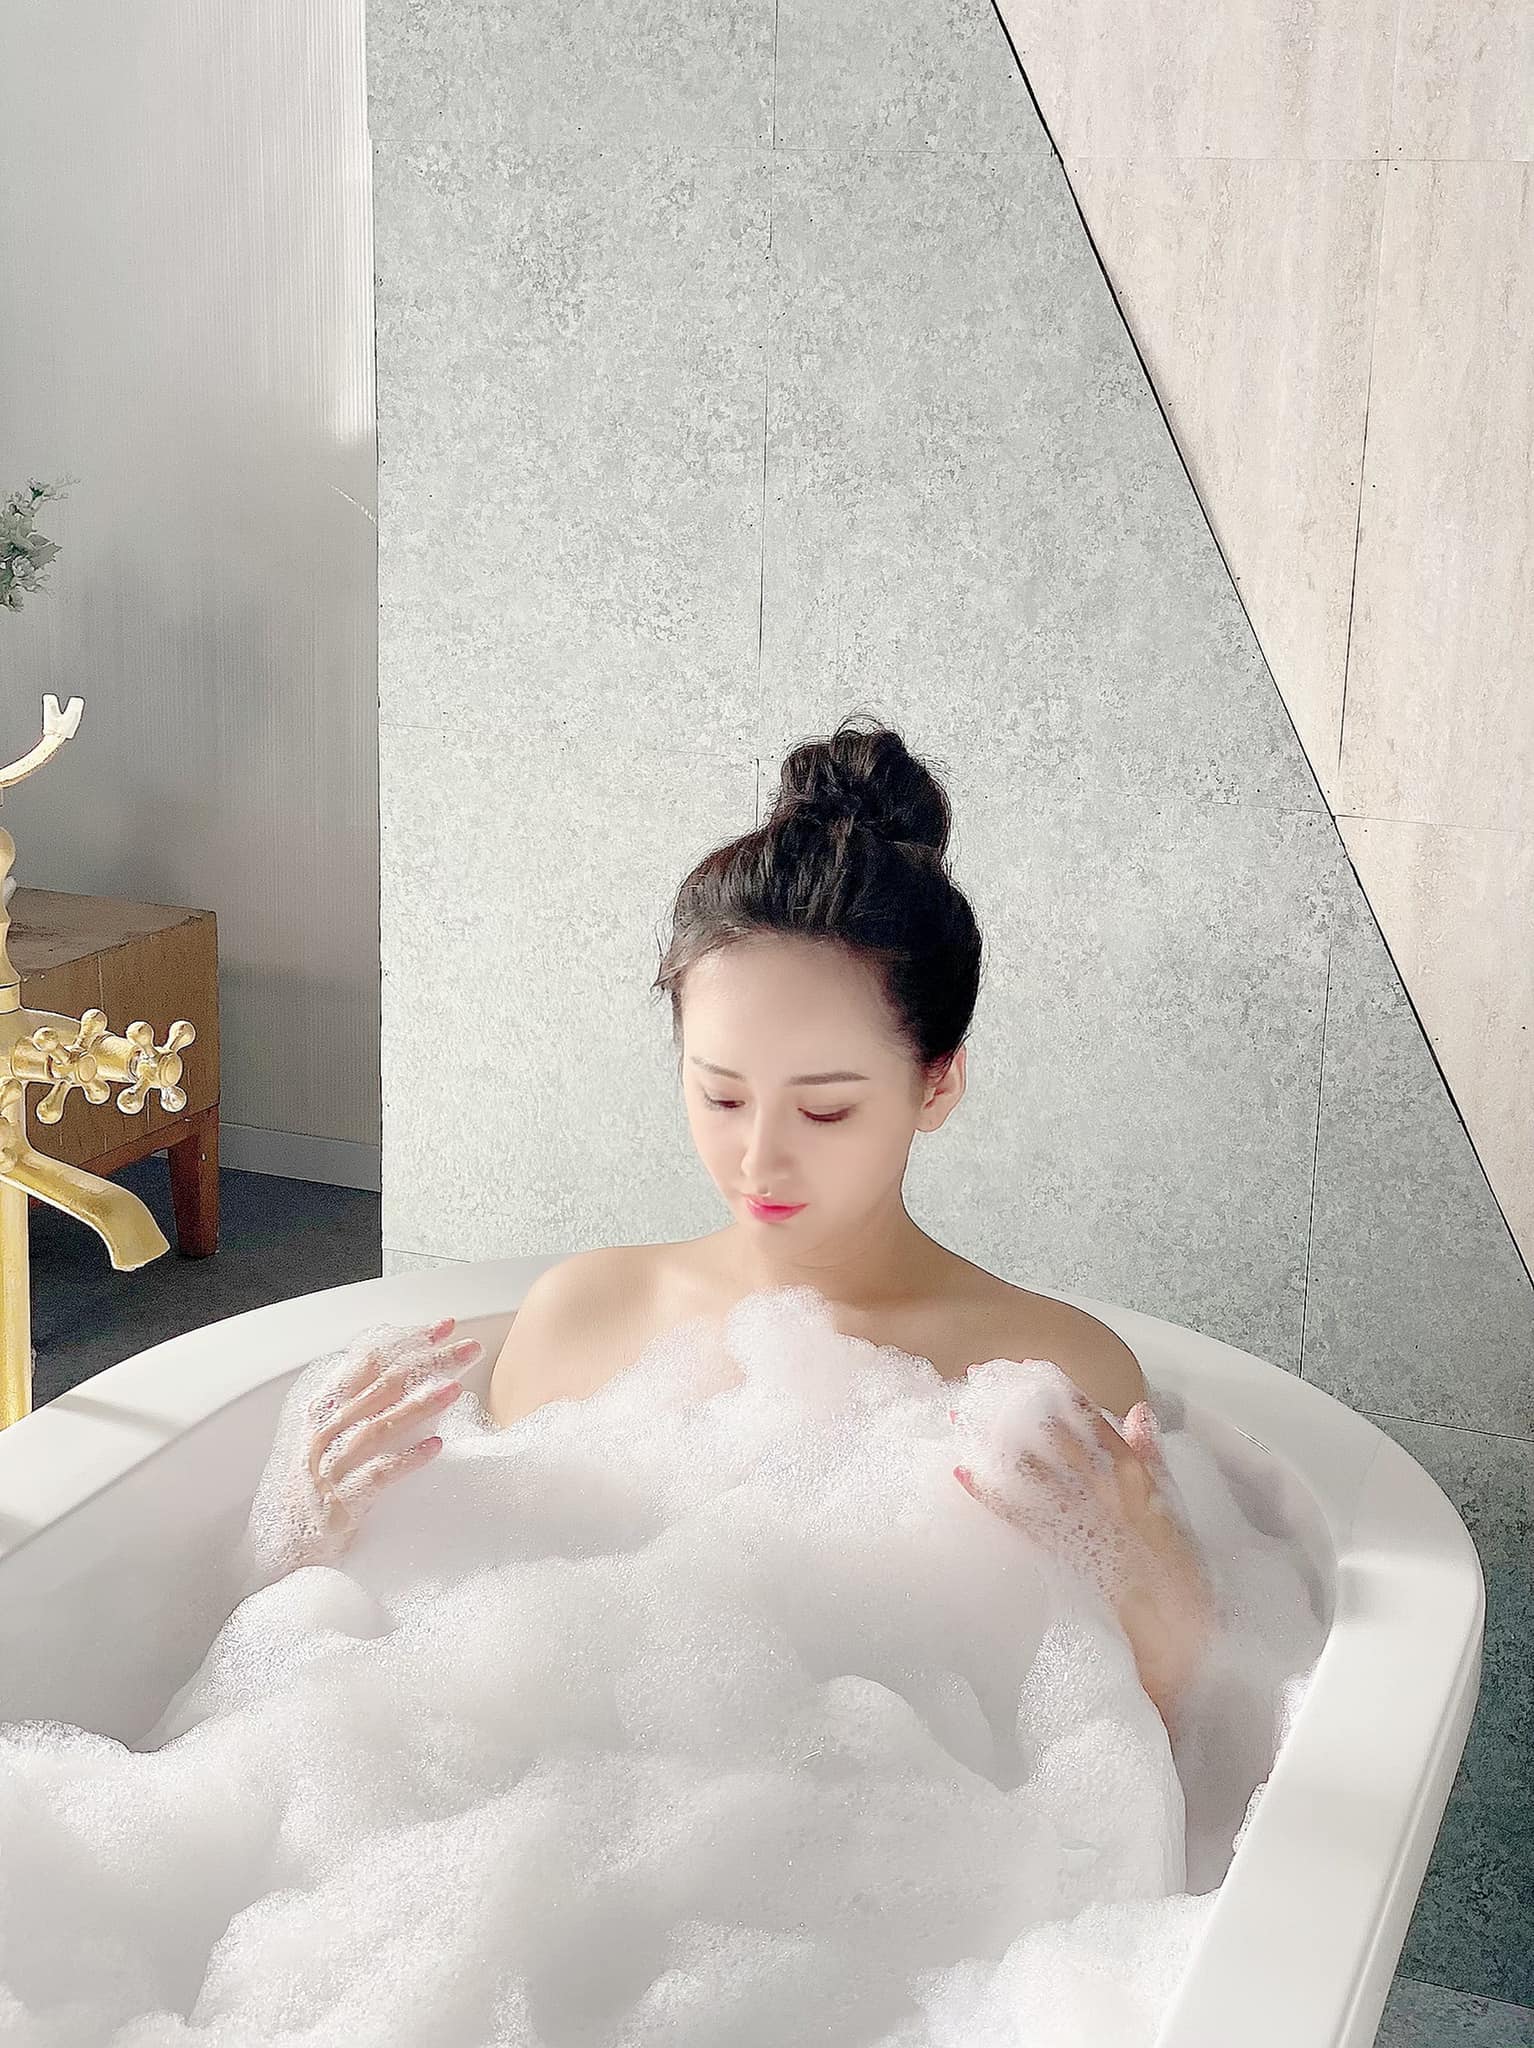 Mai Phương Thúy tung ảnh bán nude gợi cảm trong bồn tắm gây &#34;bão&#34; mạng xã hội - 1